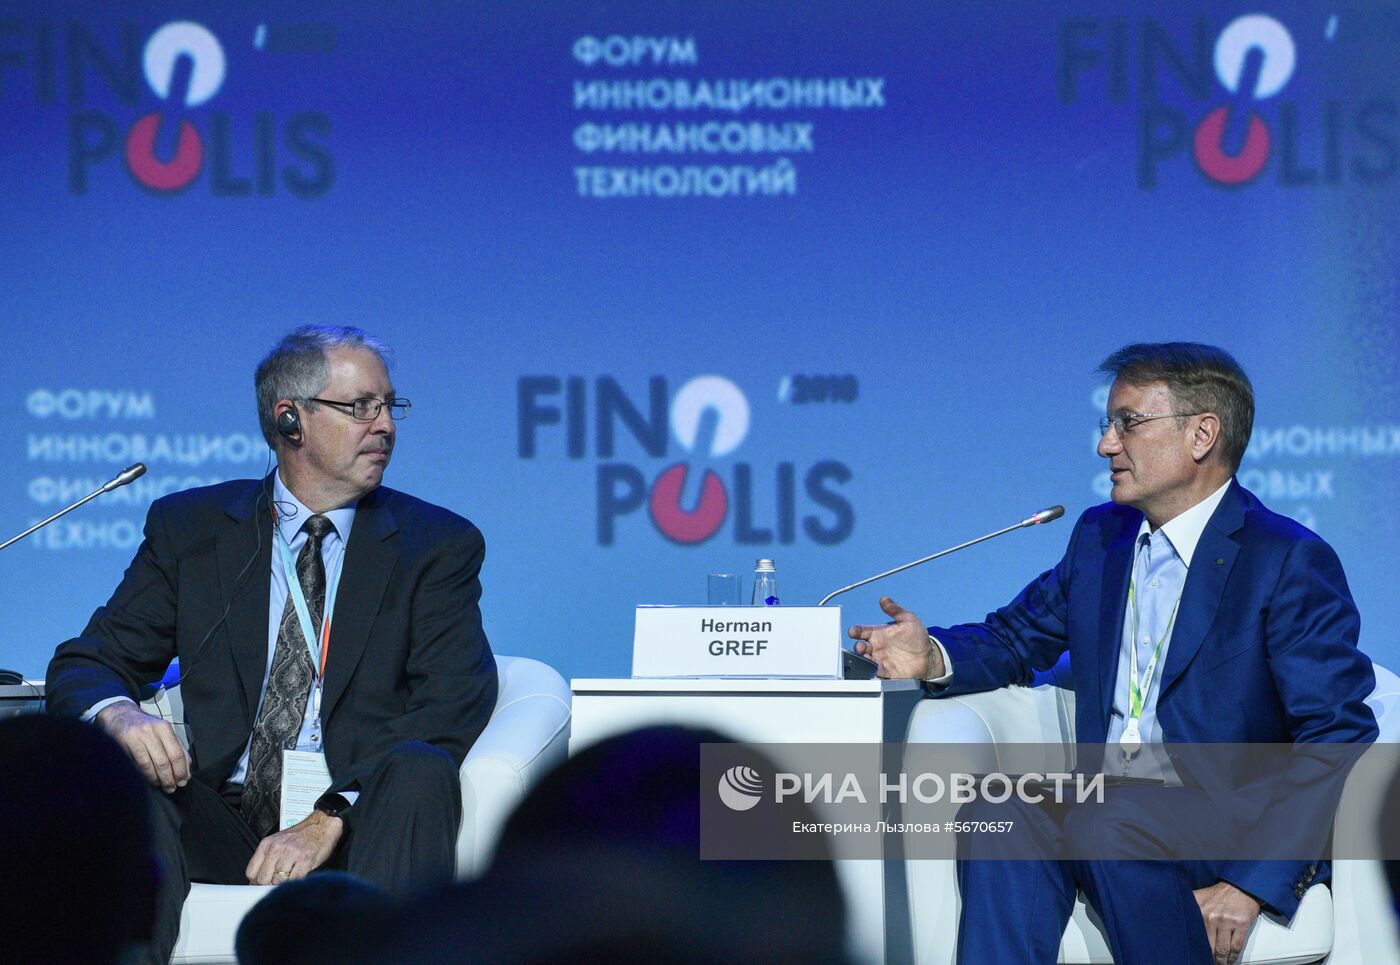 Форум инновационных финансовых технологий FINOPOLIS 2018